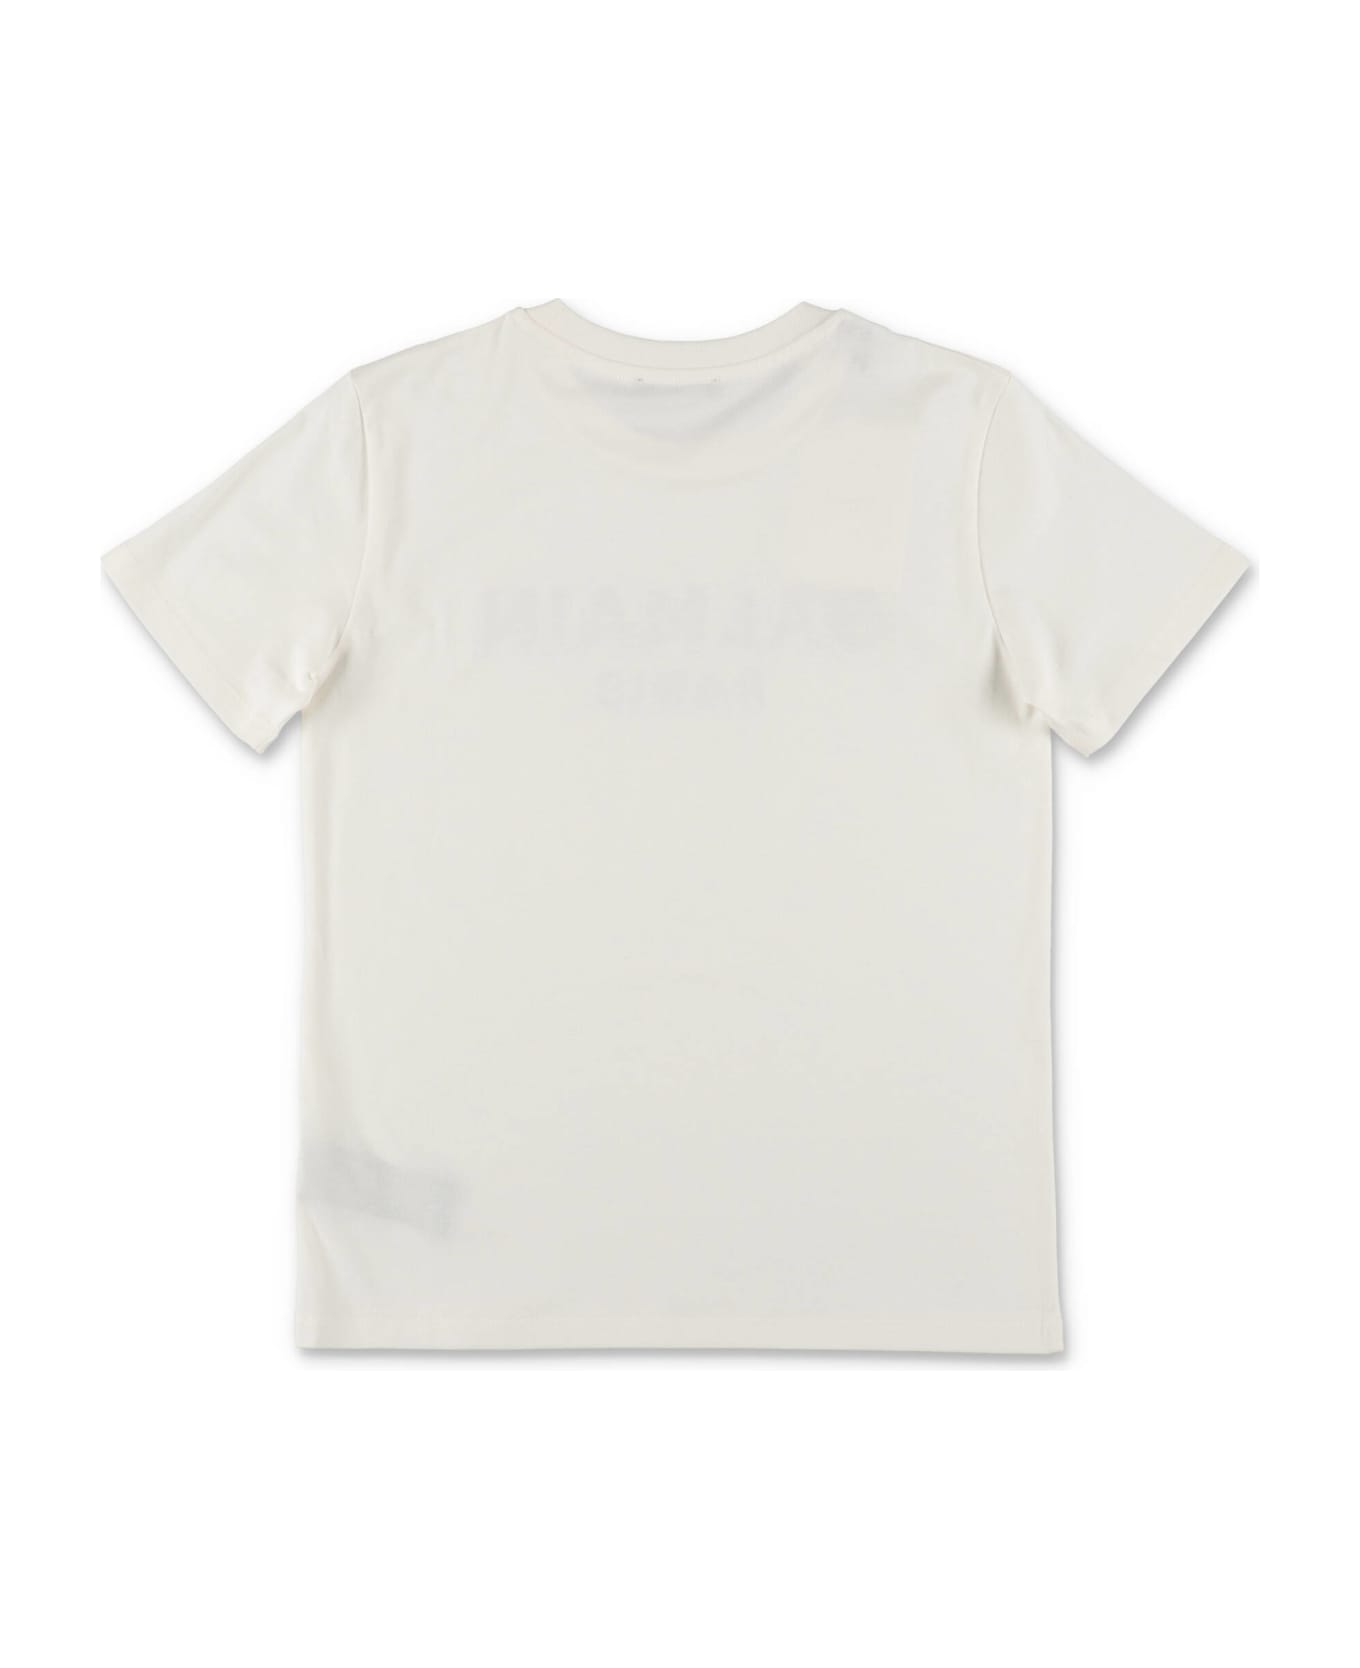 Balmain T-shirt Bianca In Jersey Di Cotone Bambino - Bianco